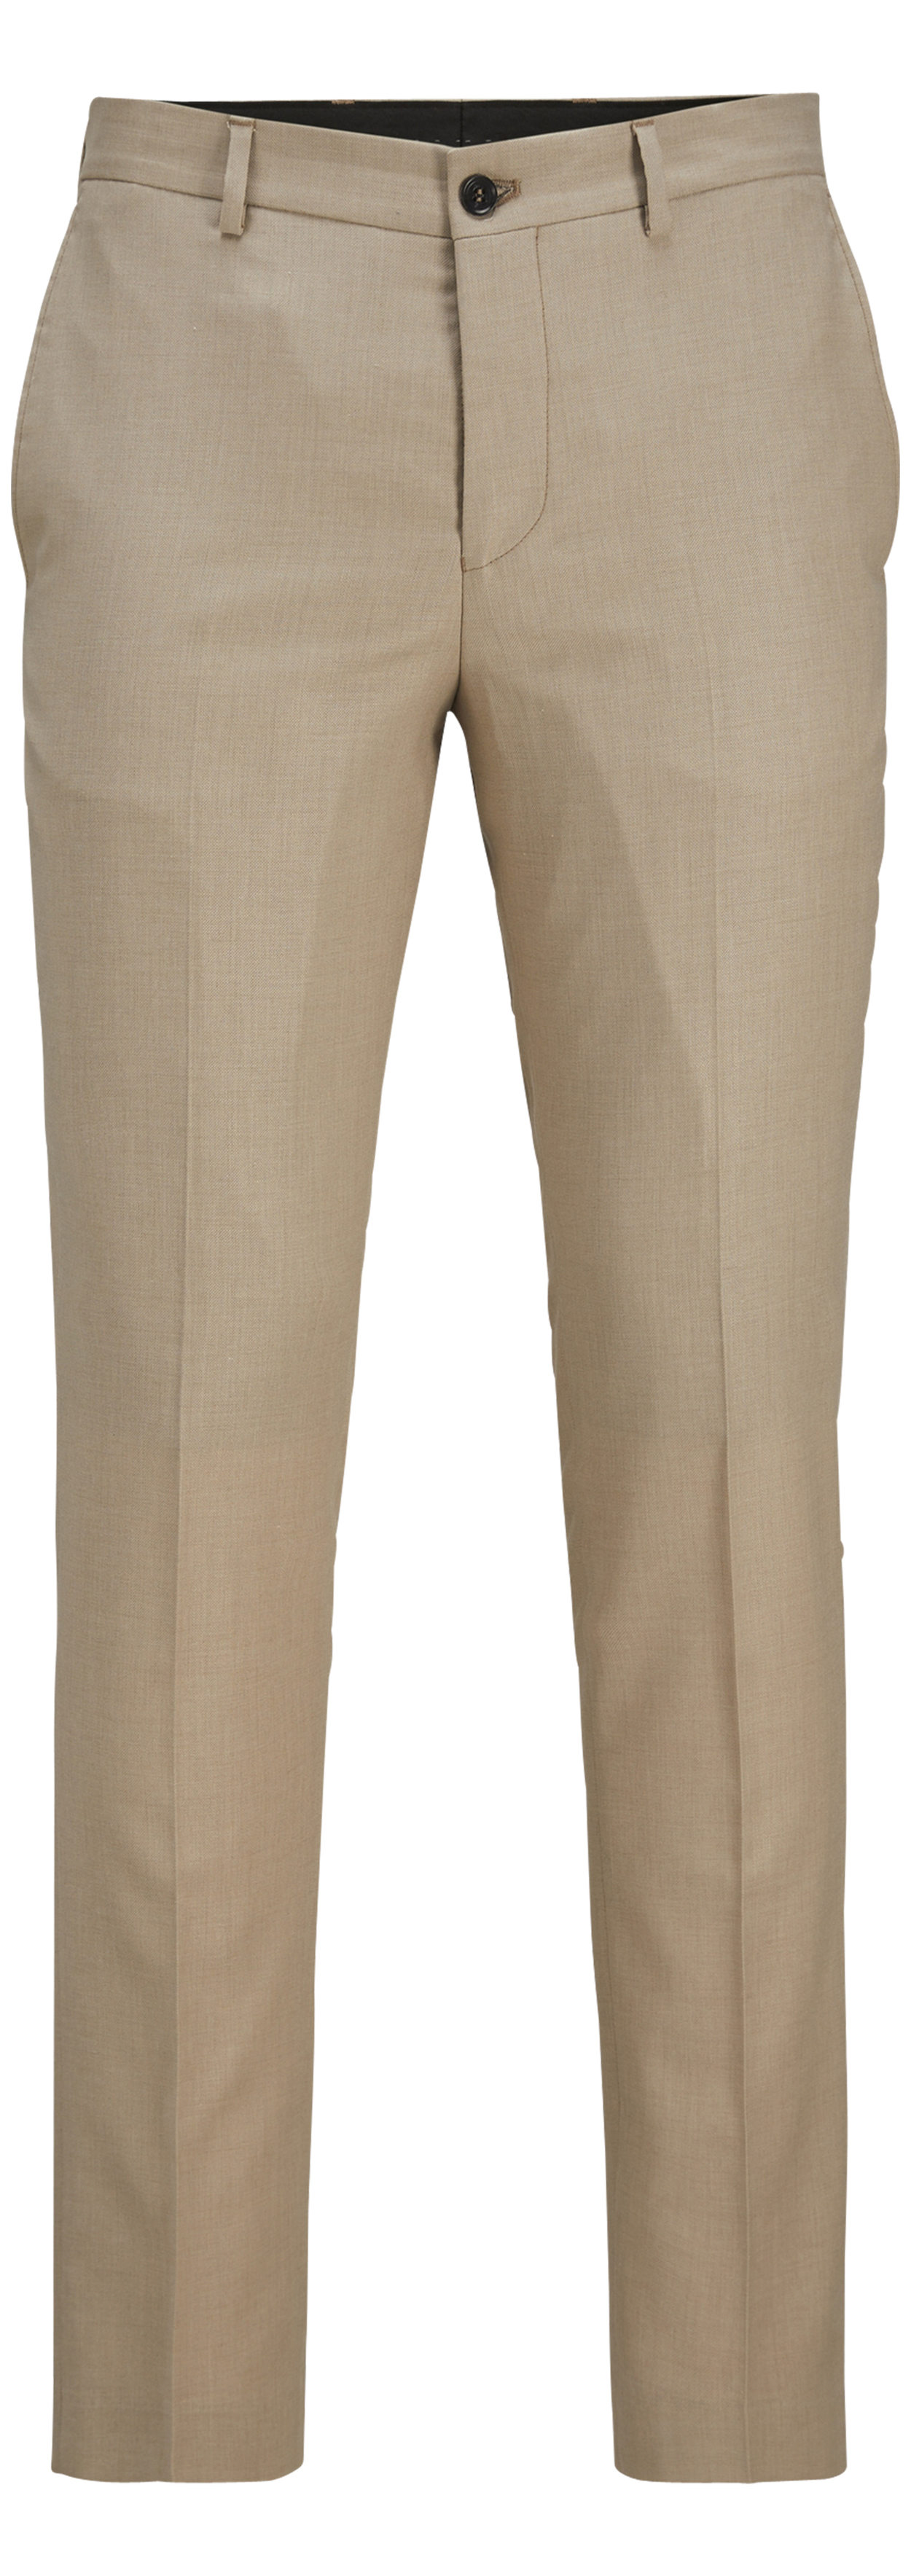 Pantalon Premium laine mélangée beige